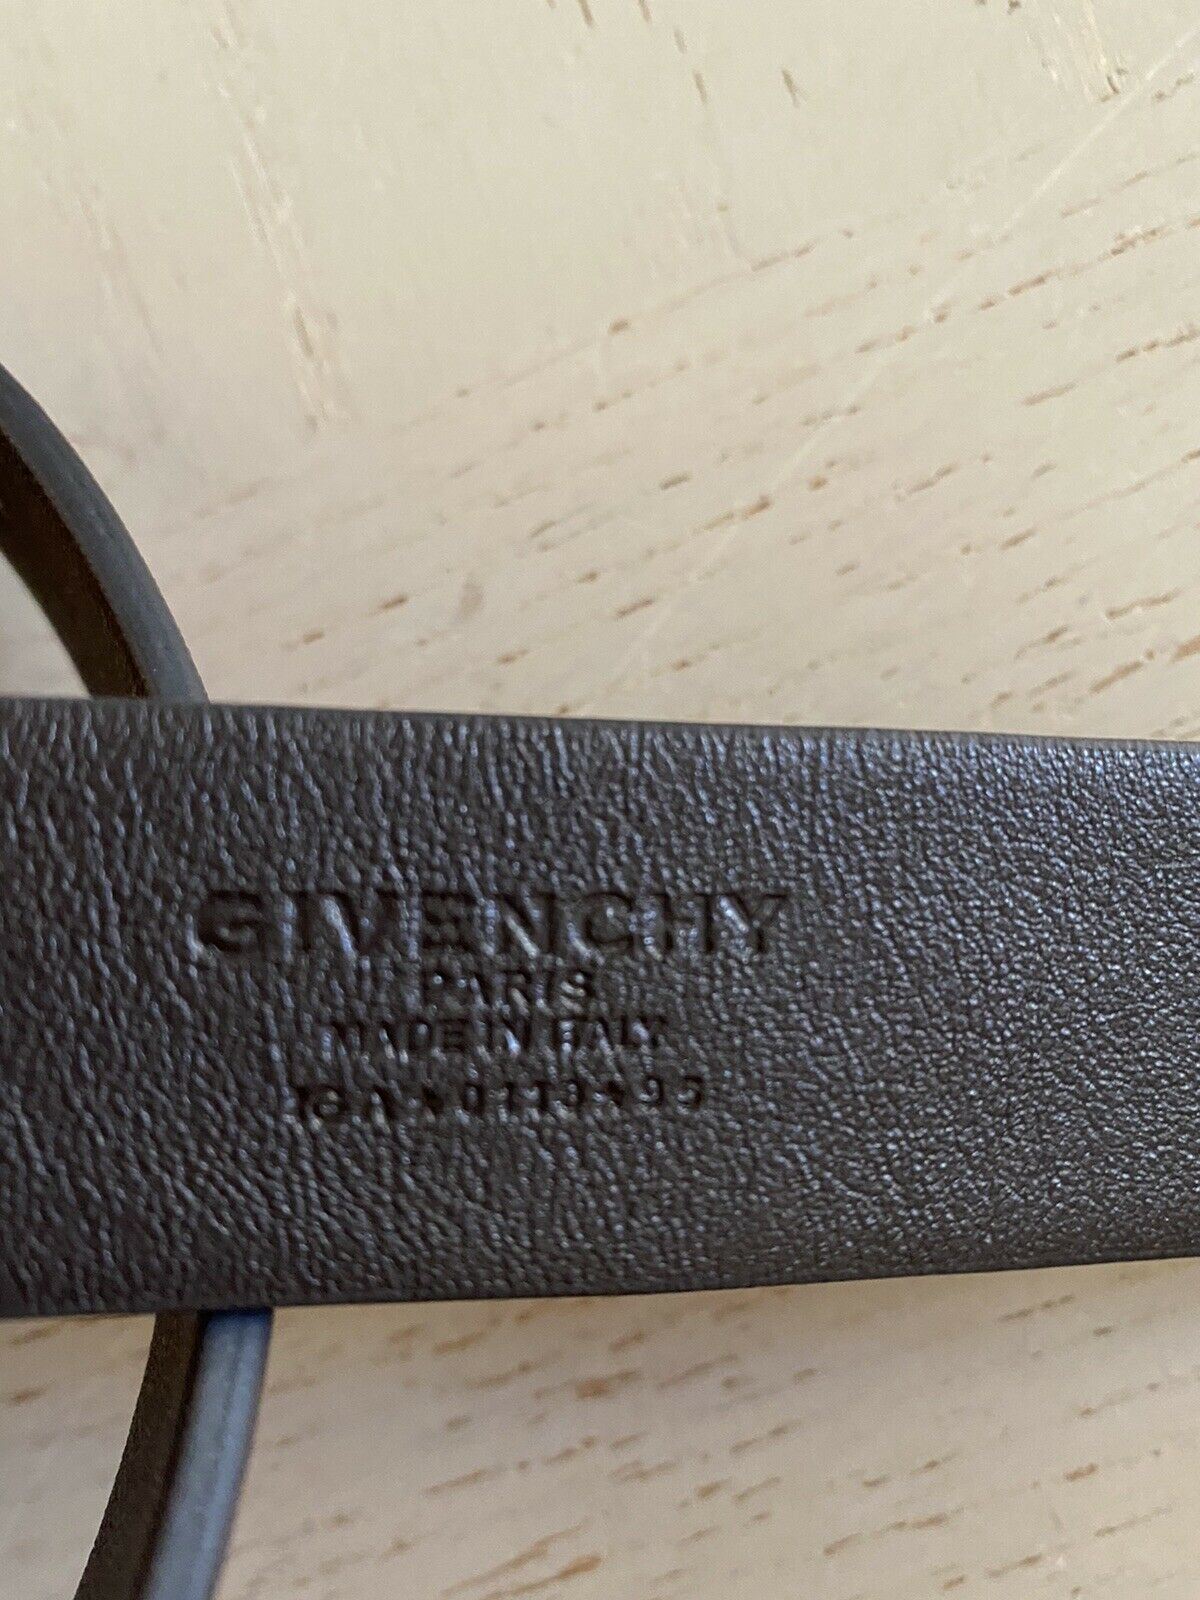 Новый мужской длинный ремень из натуральной кожи 4-G с гравировкой от Givenchy за 550 долларов, коричневый 38/95, Италия